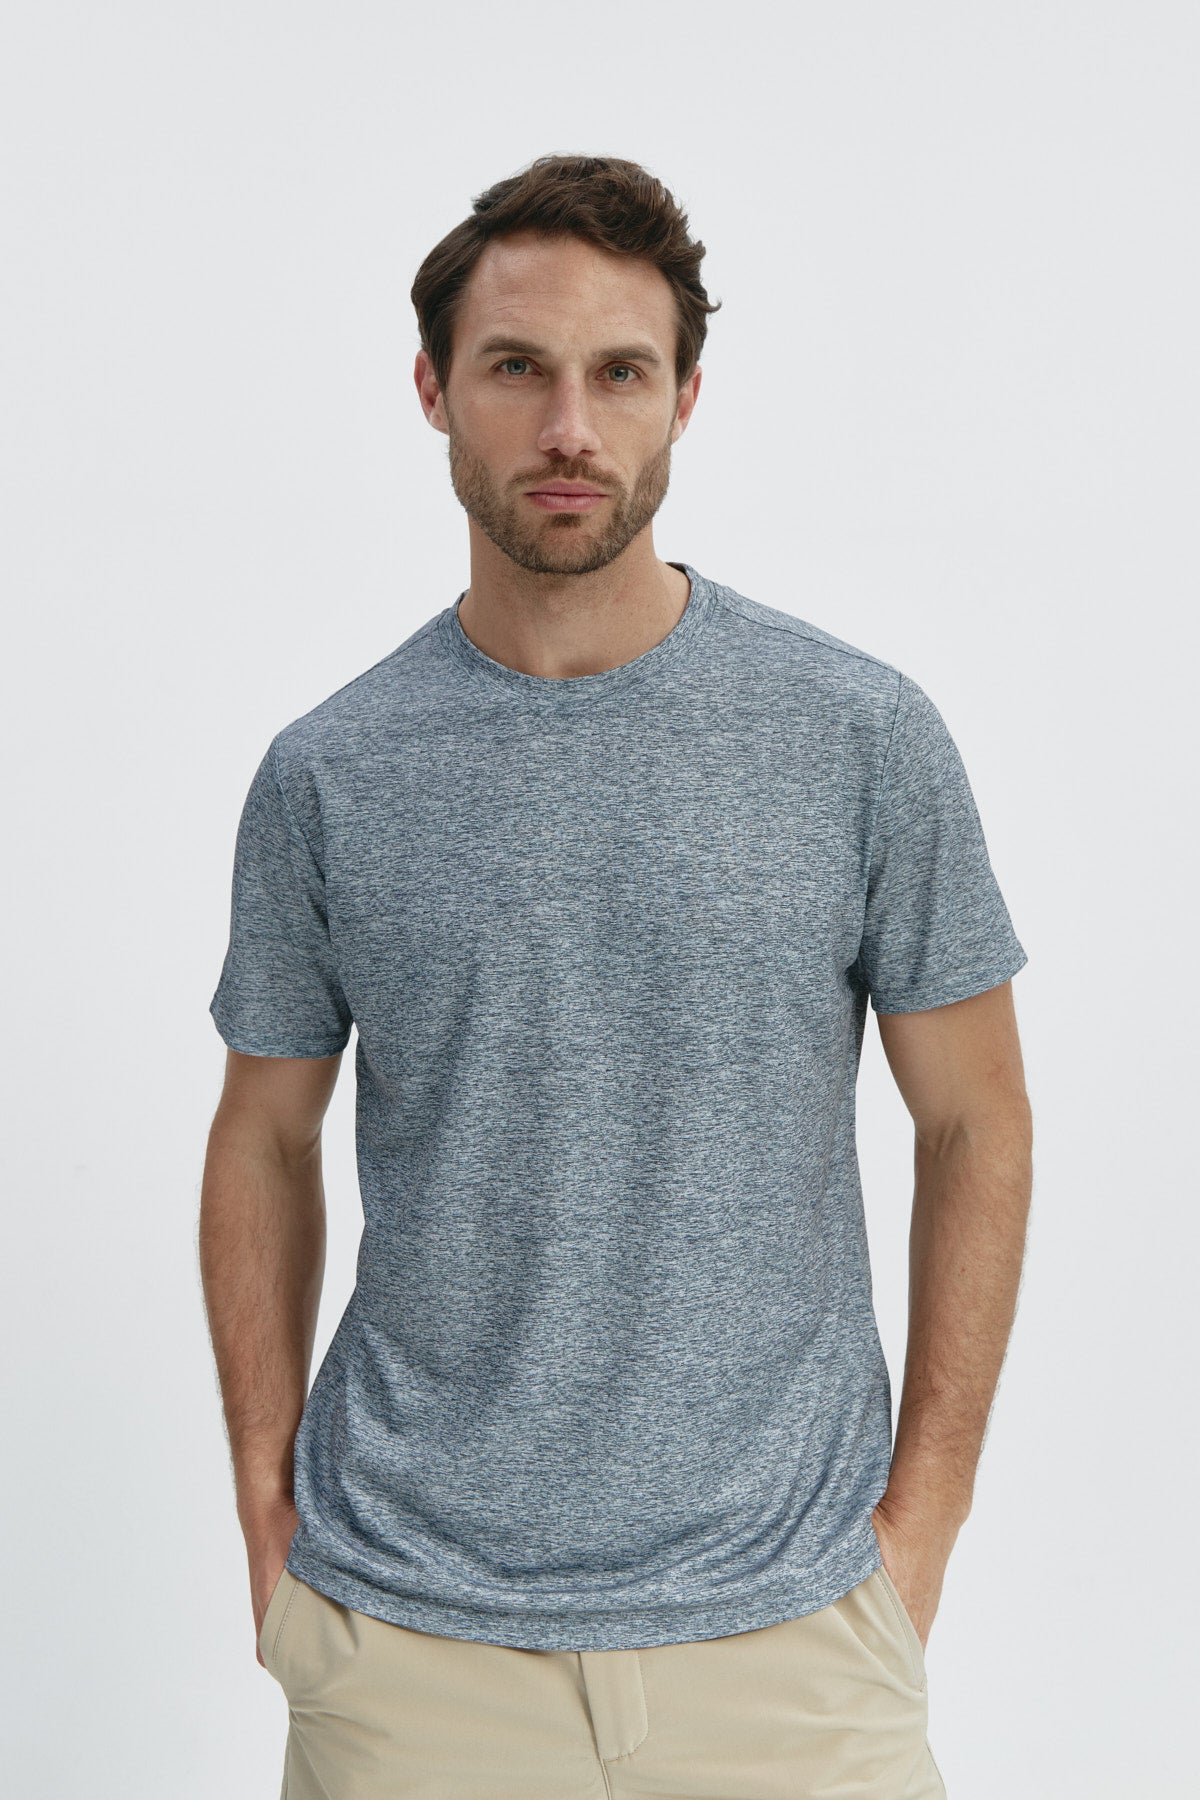 Camiseta de hombre en gris melange. de Sepiia, fresca y estilosa. Foto de frente.